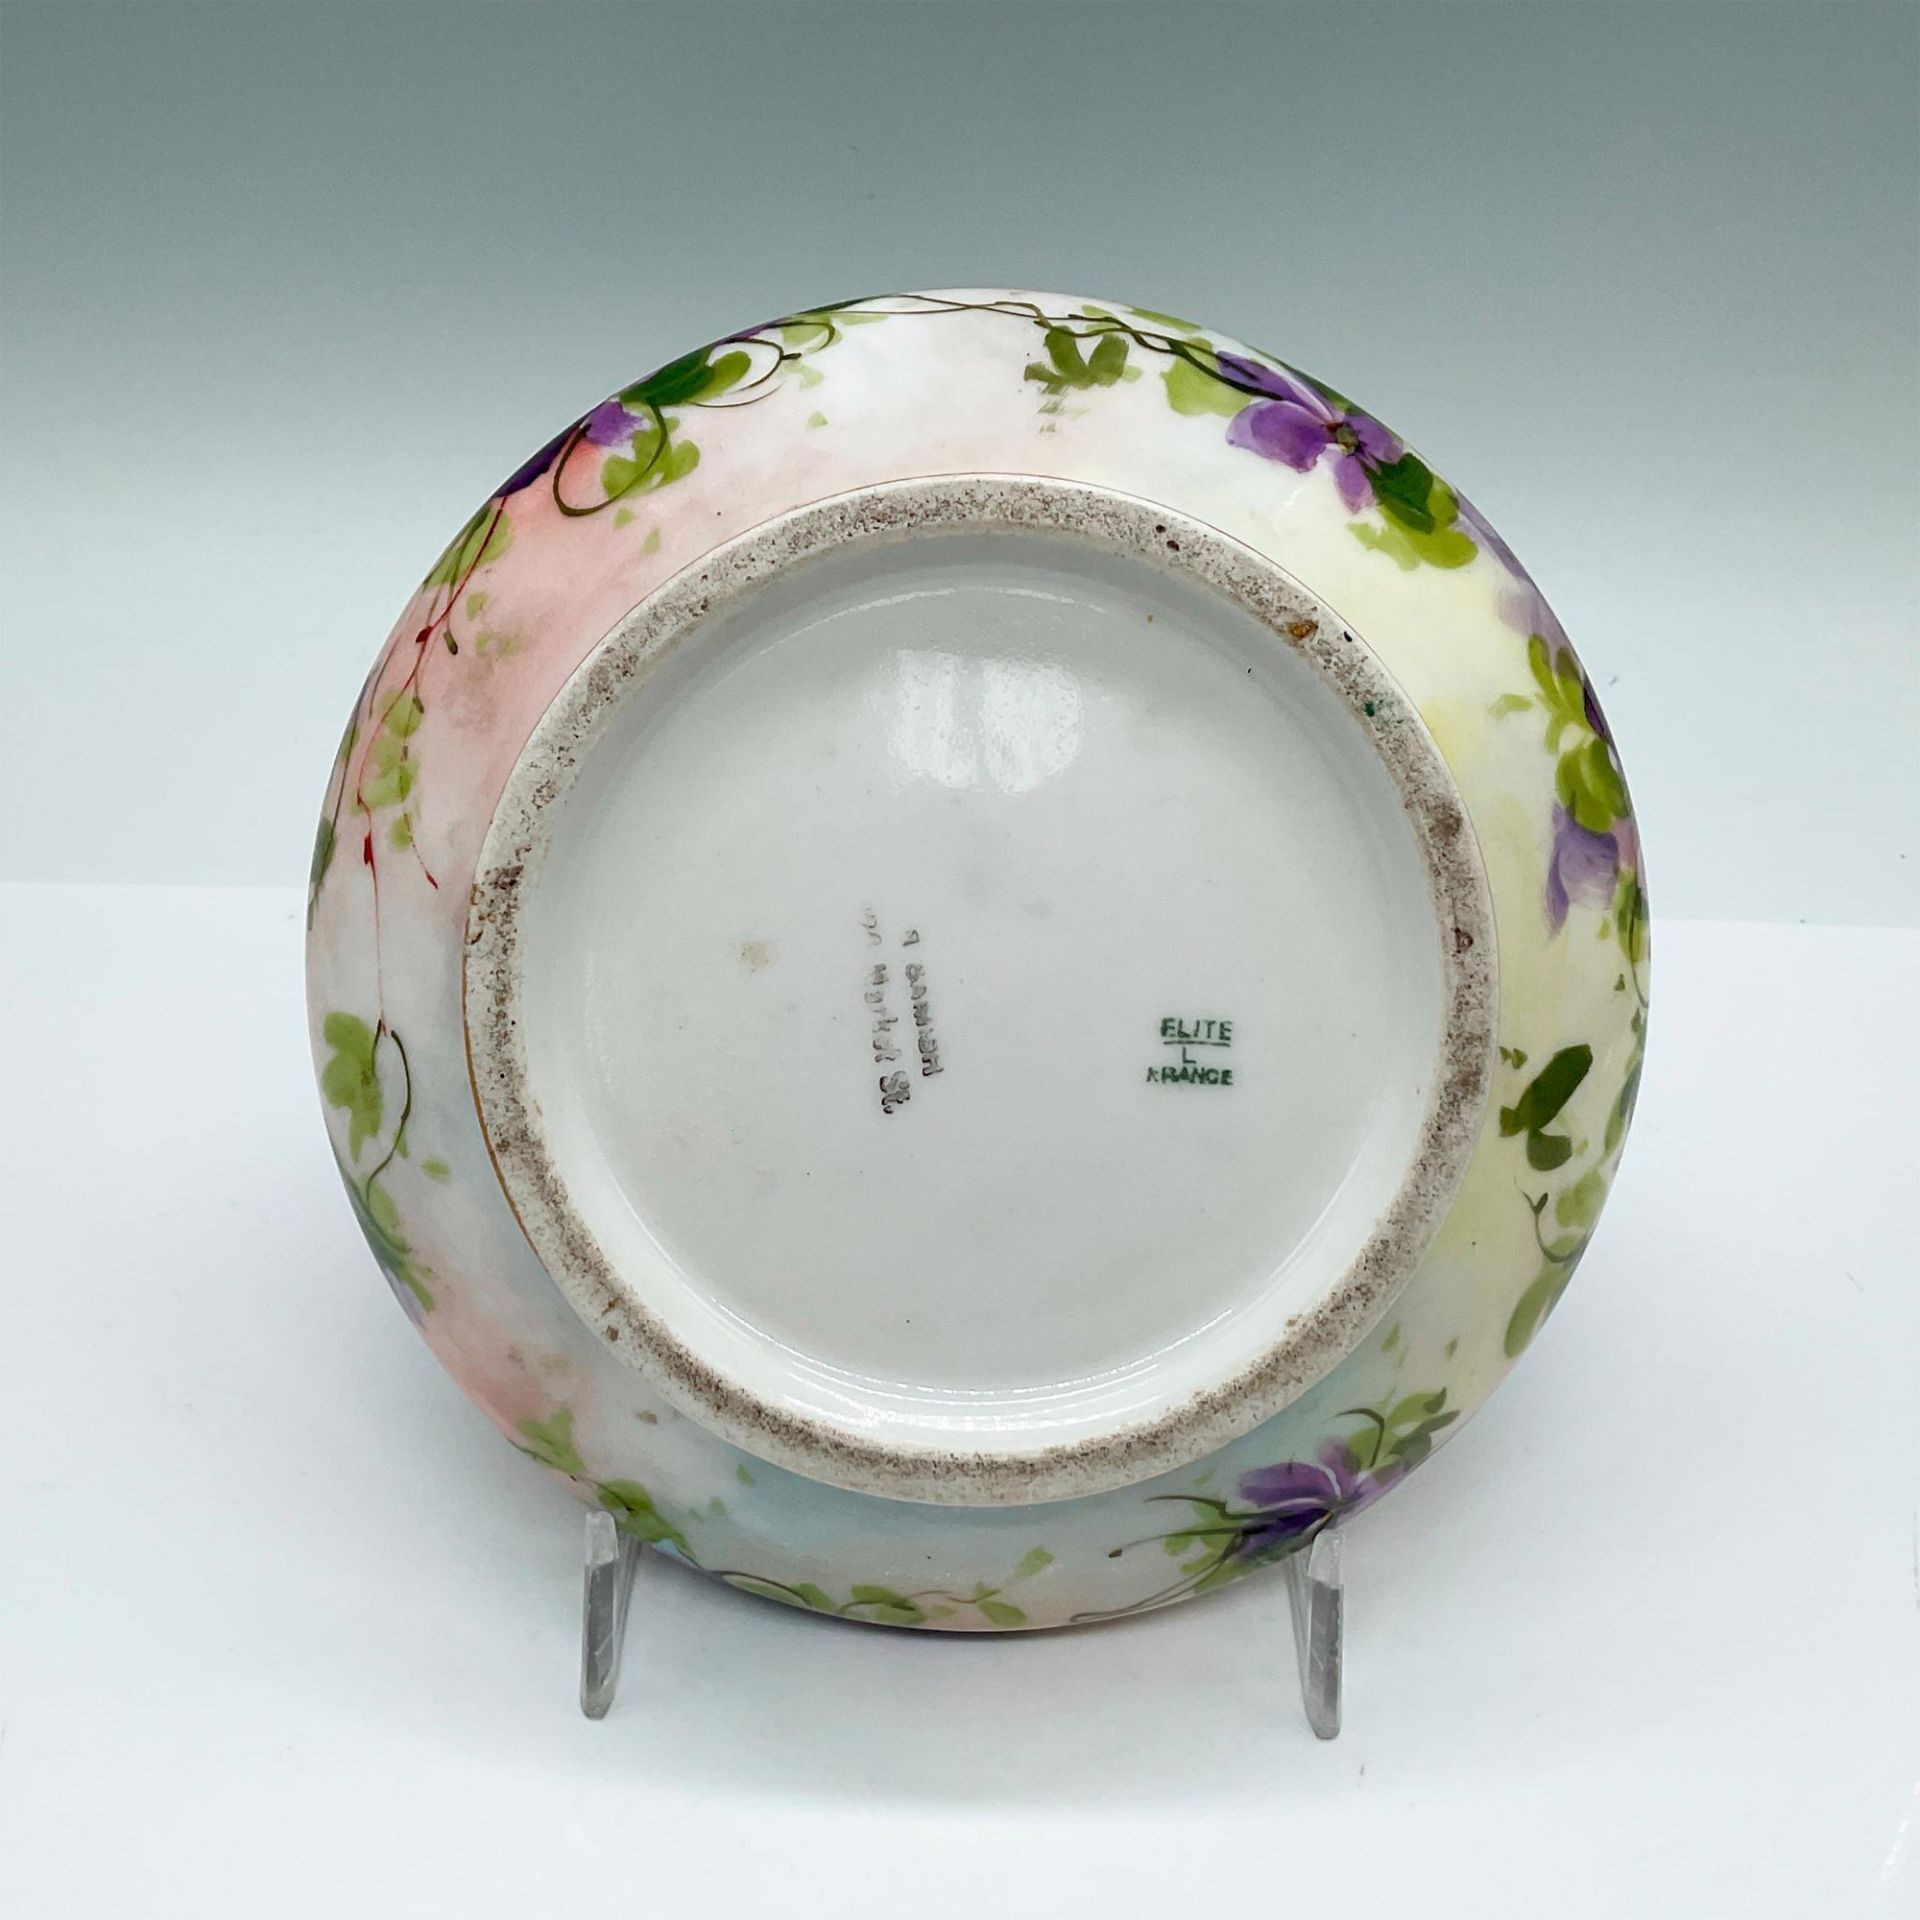 Elite Porcelain Limoges Floral Dresser Box with Cover - Image 3 of 3